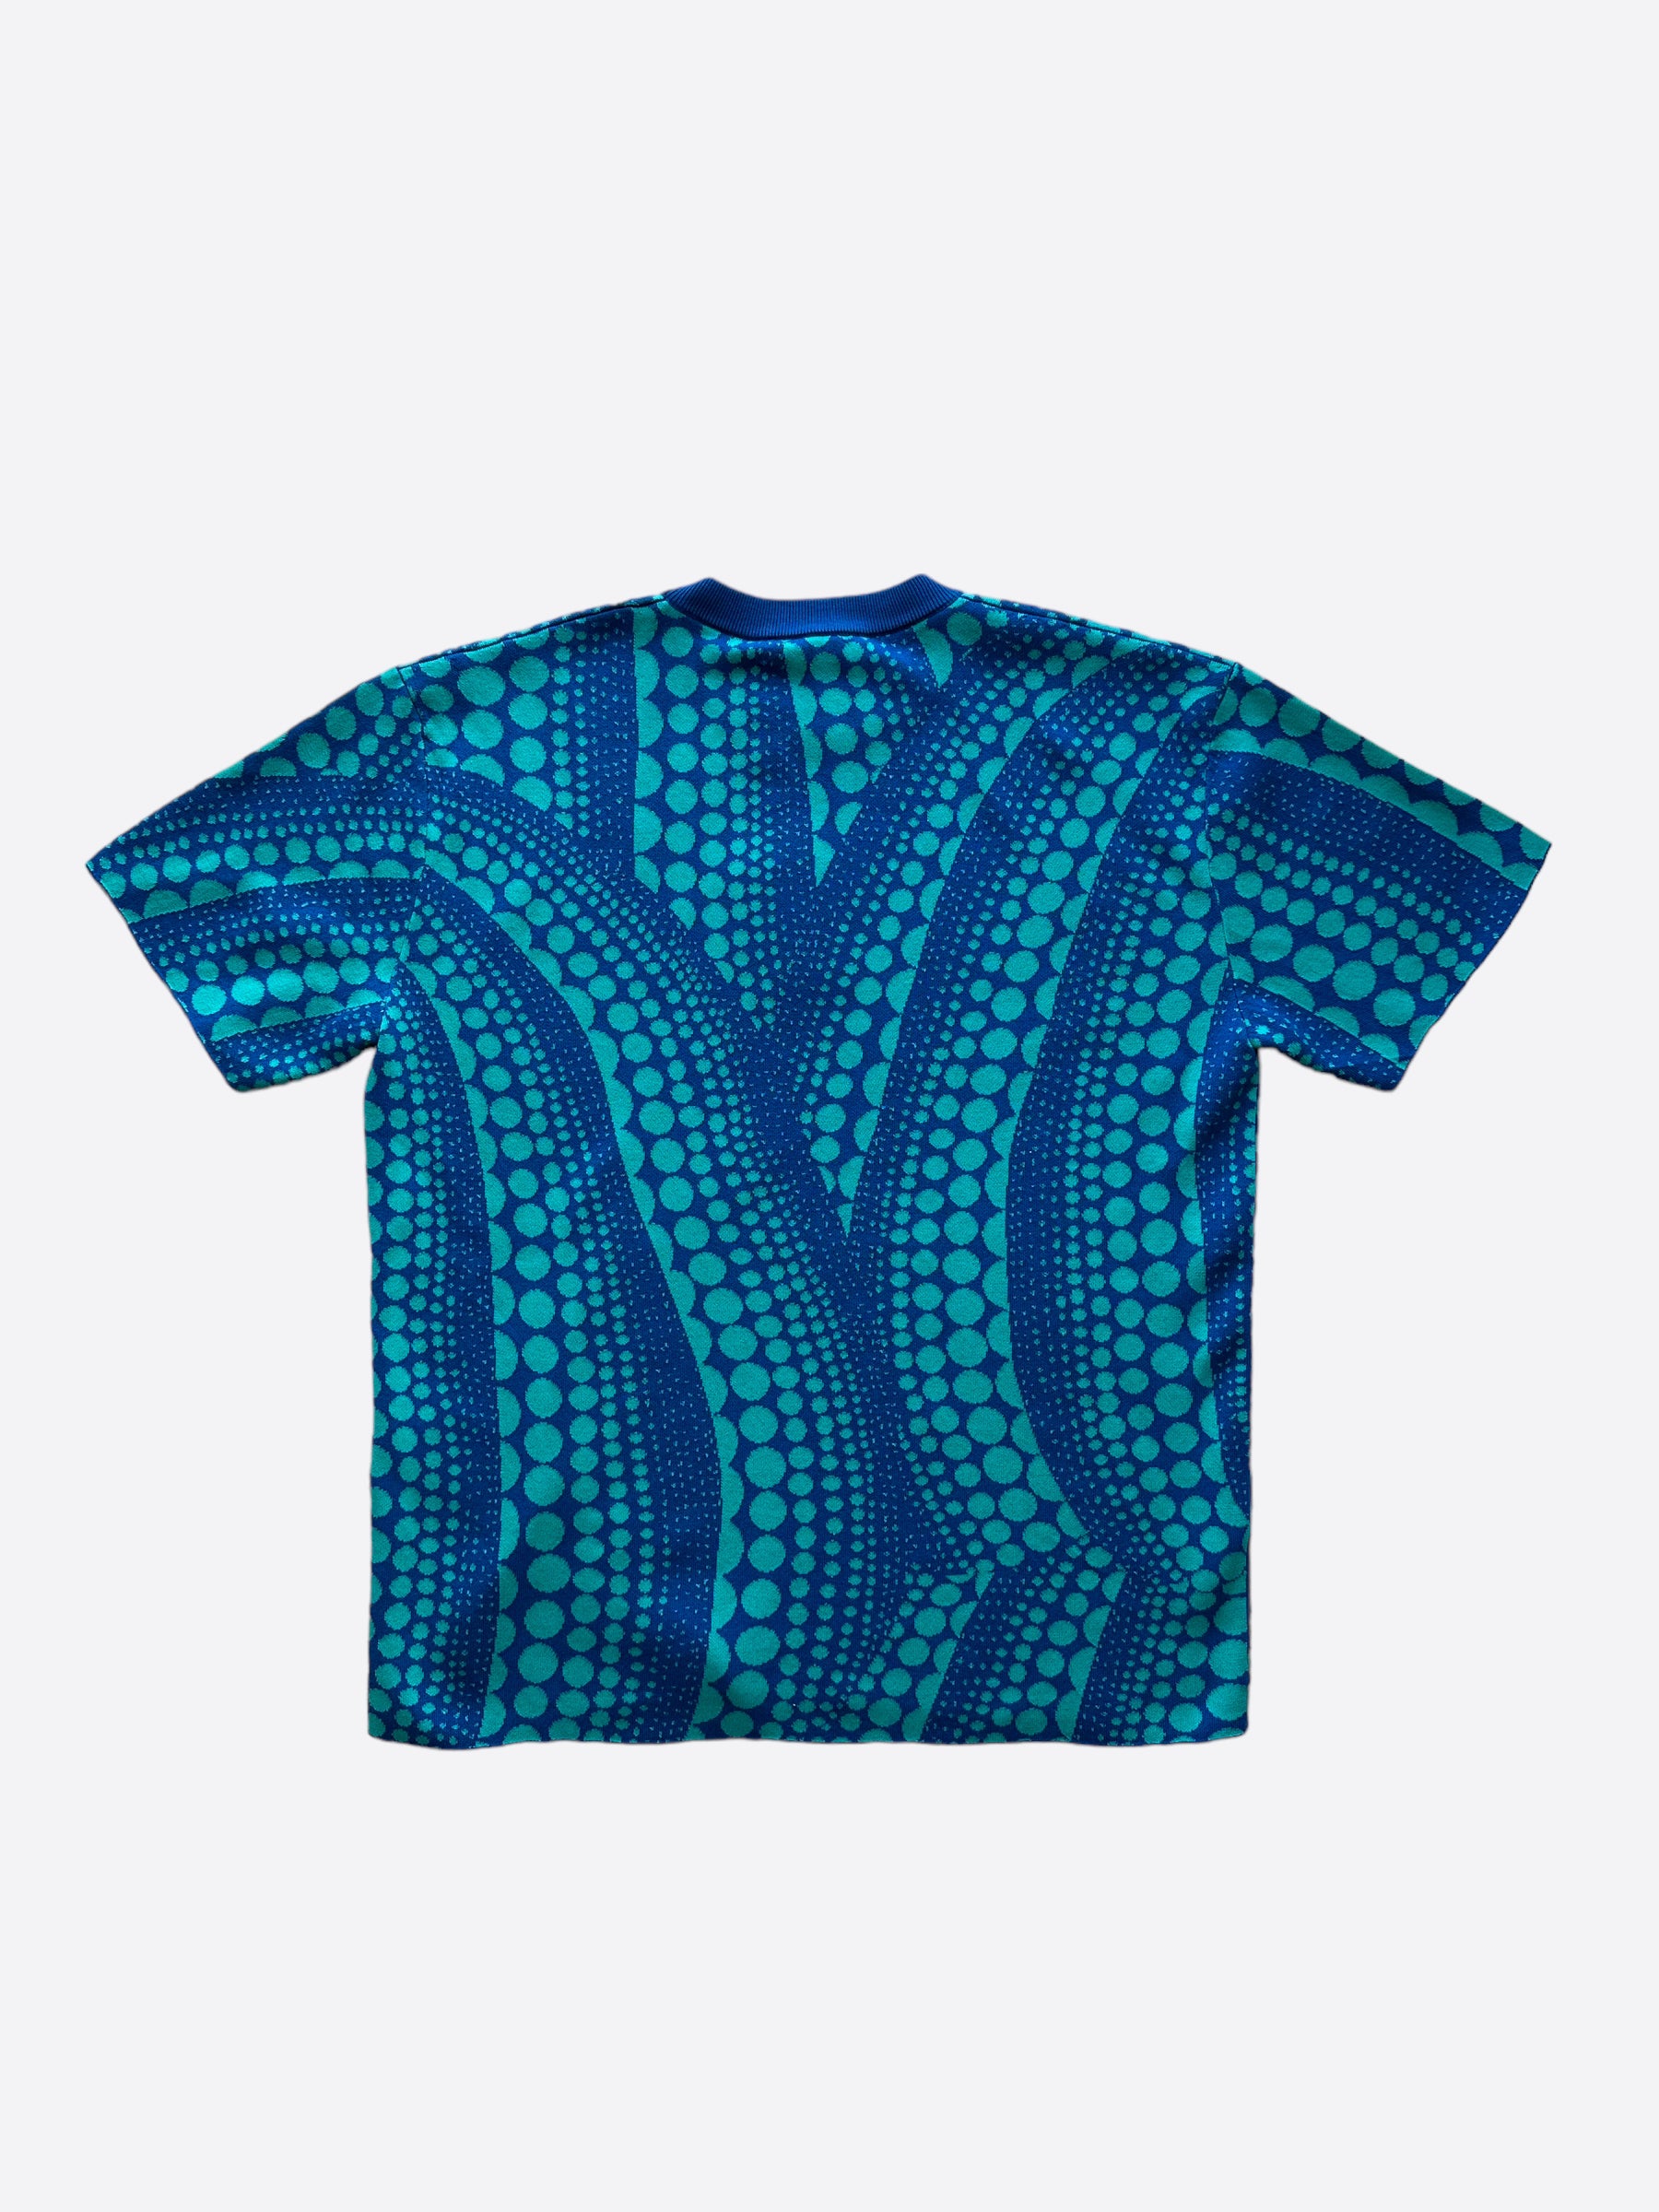 Louis Vuitton Men's T-Shirts for sale